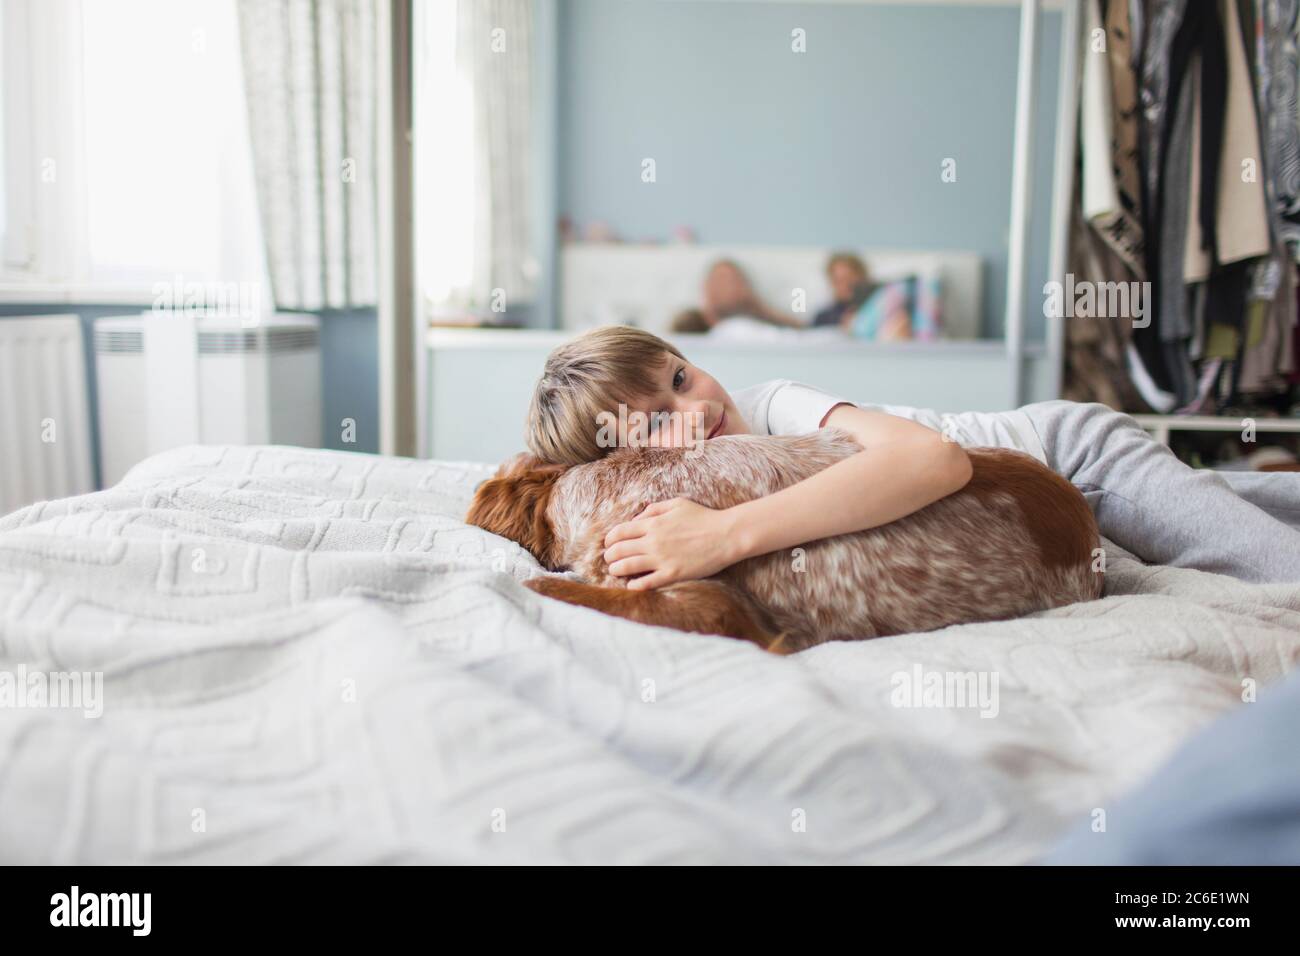 Portrait cute boy cuddling dog on bed Stock Photo